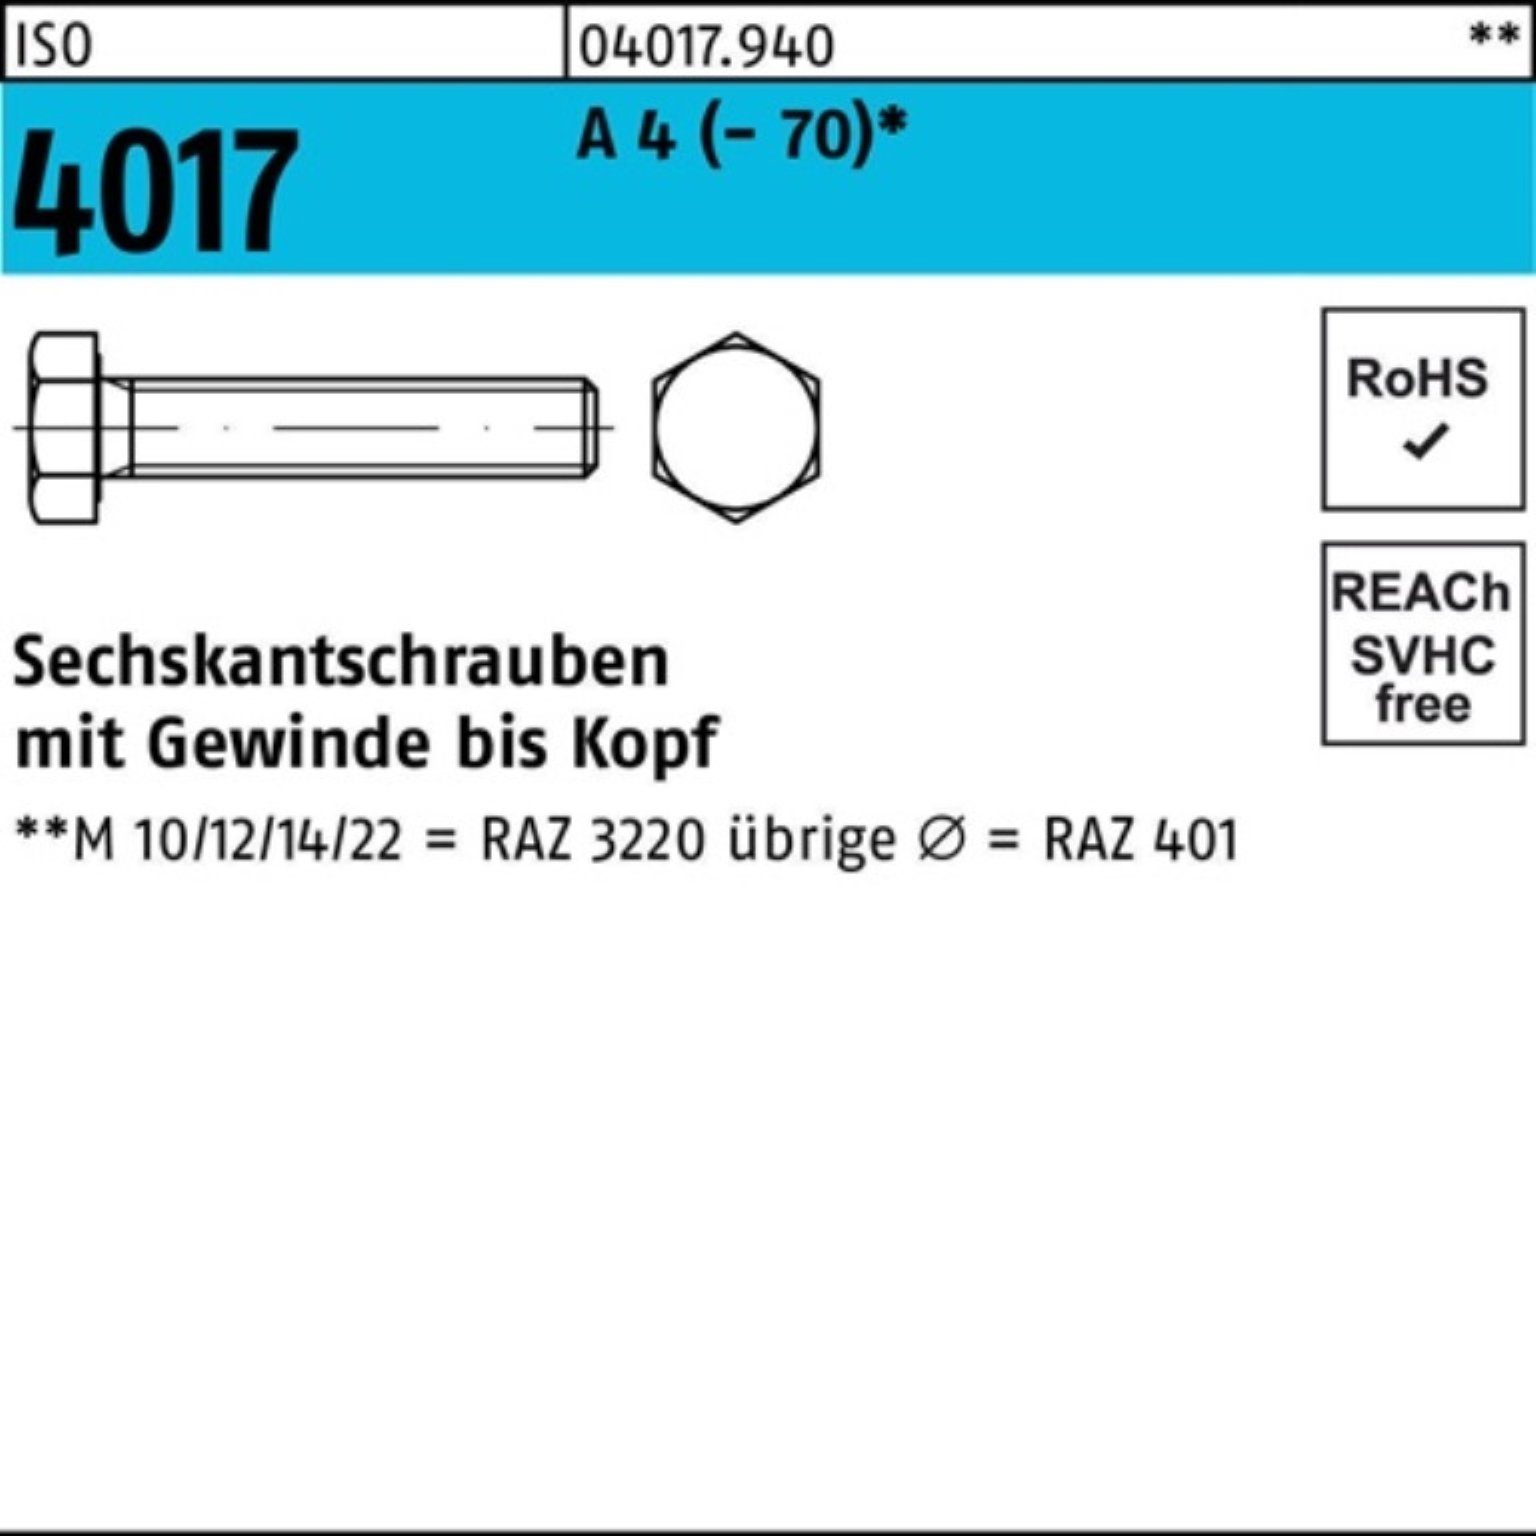 Bufab Sechskantschraube 100er Pack Sechskantschraube ISO 4017 VG M6x 50 A 4 (70) 100 Stück | Schrauben